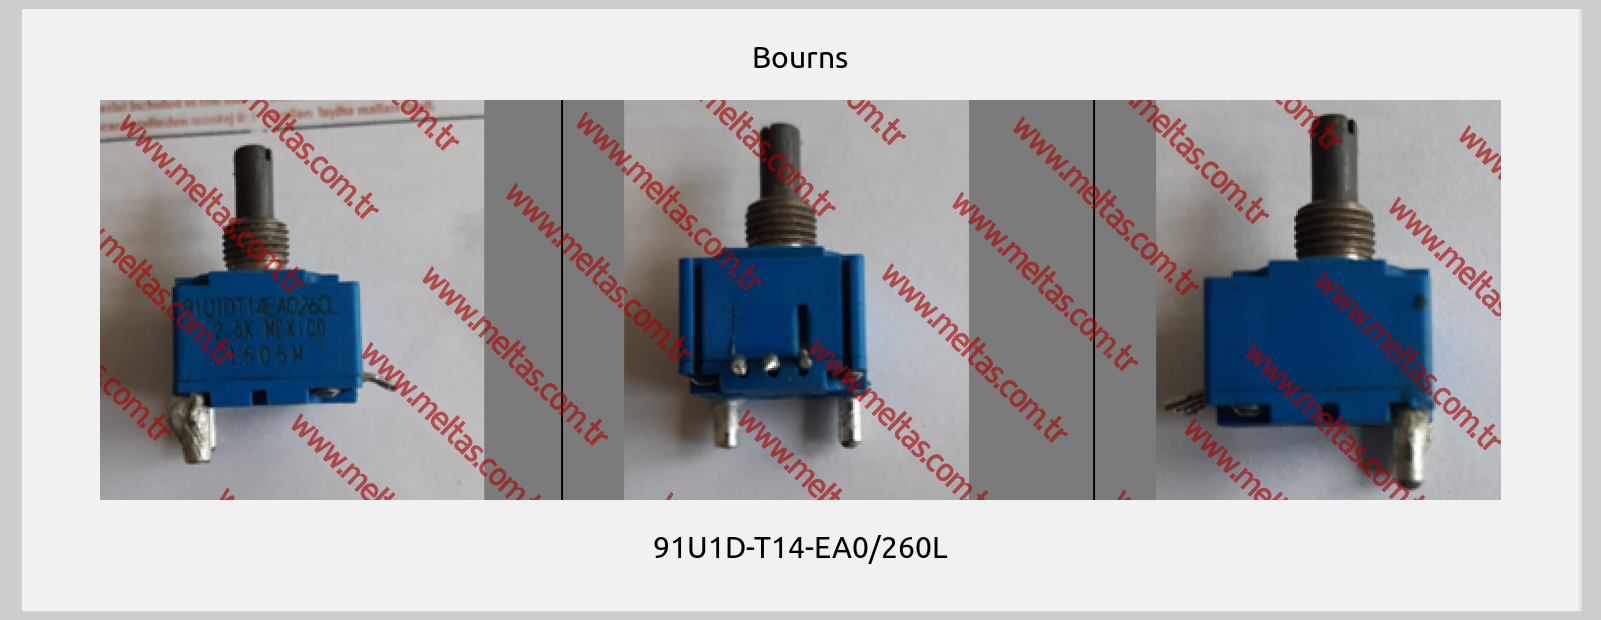 Bourns-91U1D-T14-EA0/260L